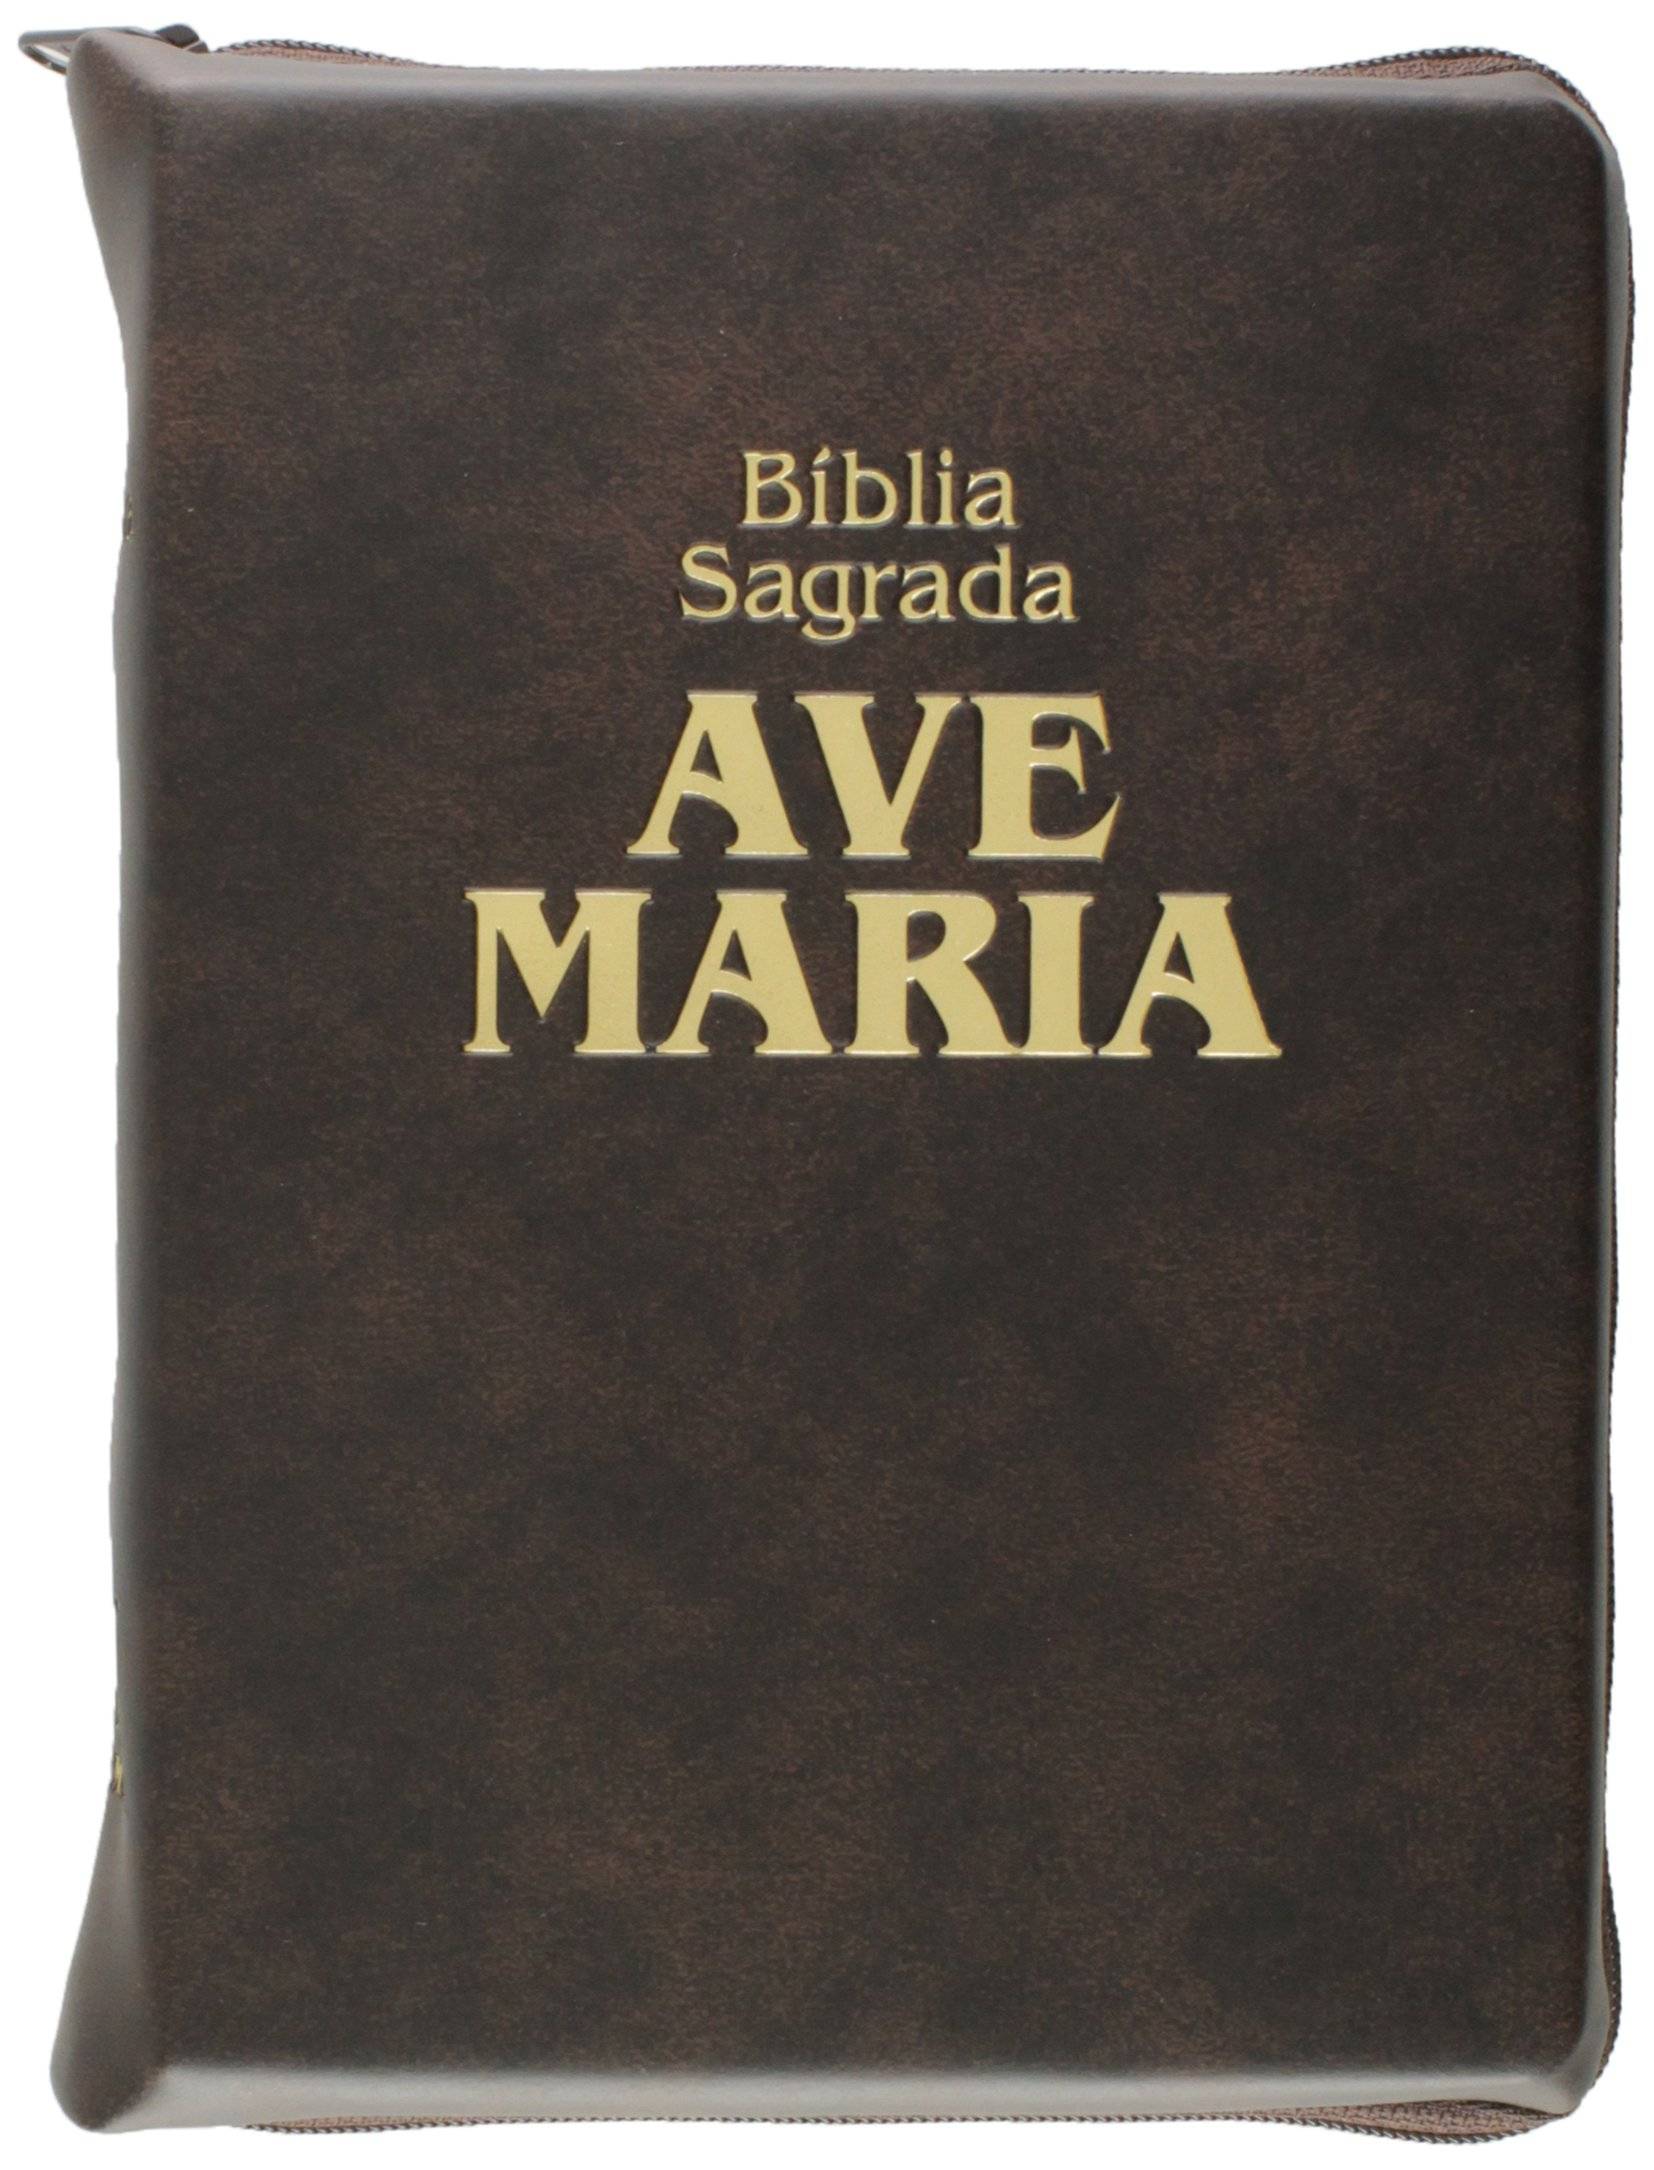 Bíblia Ave Maria com Zíper, letra Média e capa Marrom